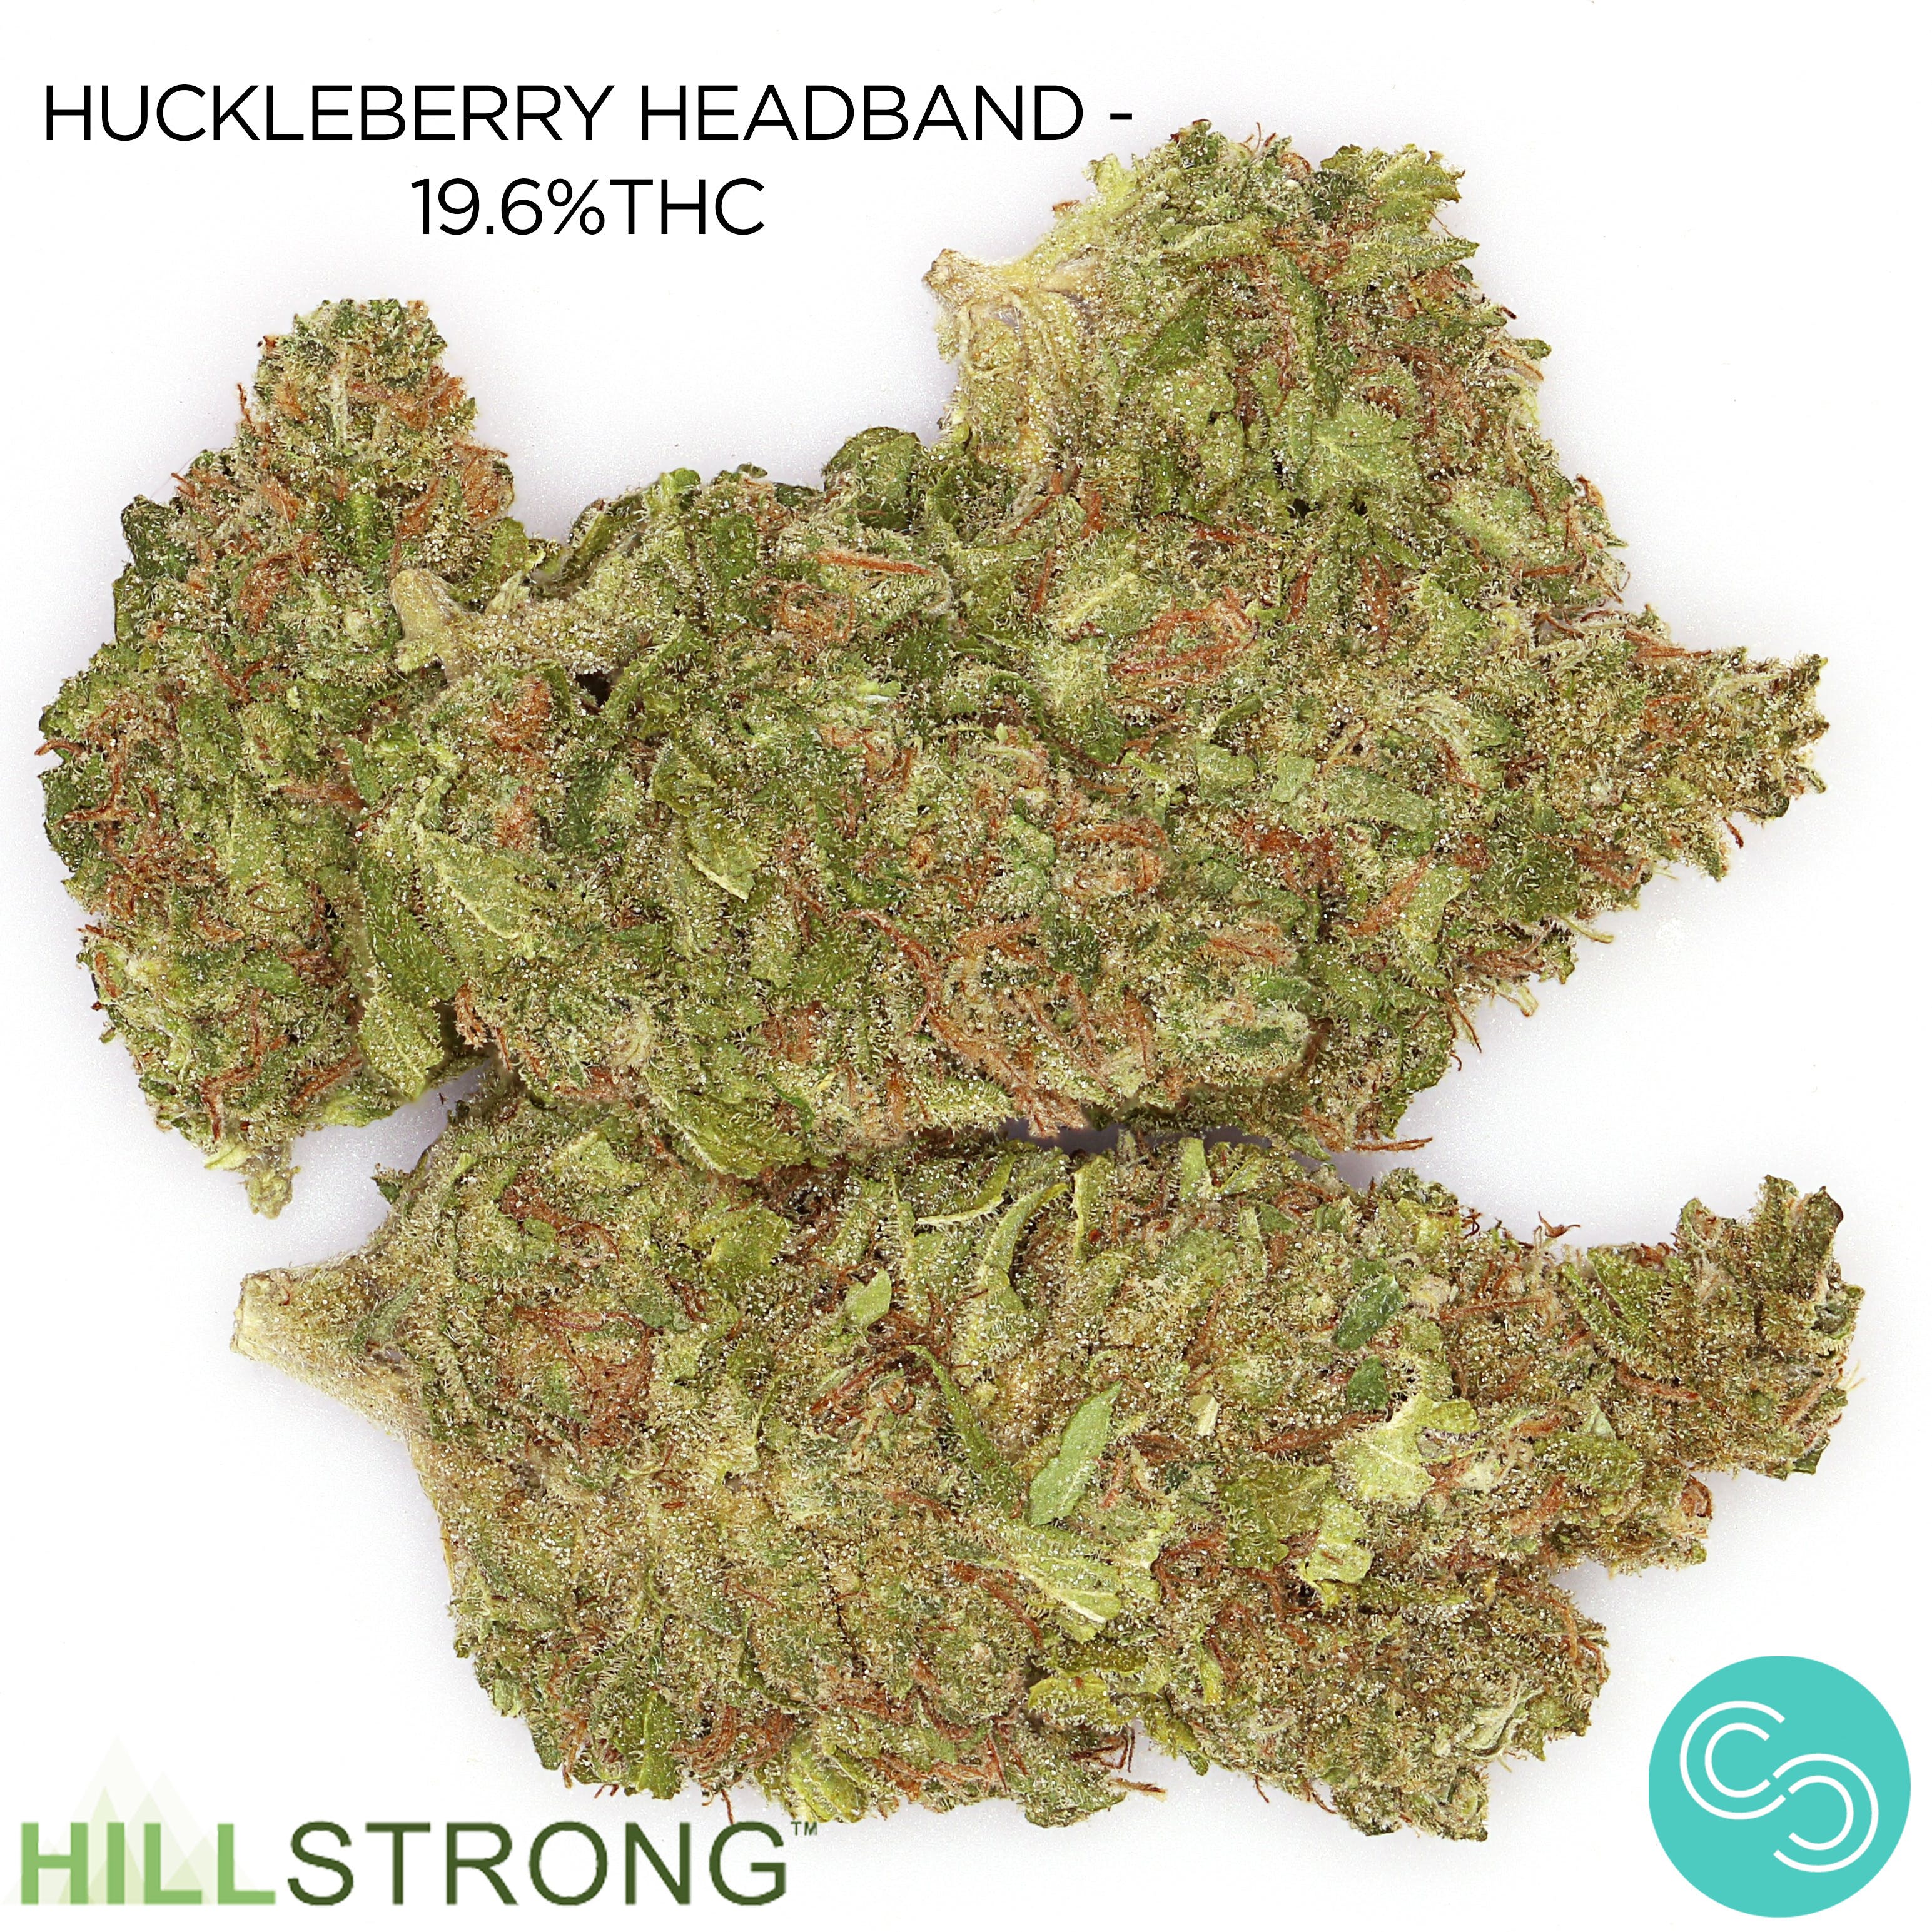 Hillstrong - Huckleberry Headband - 19.6%THC